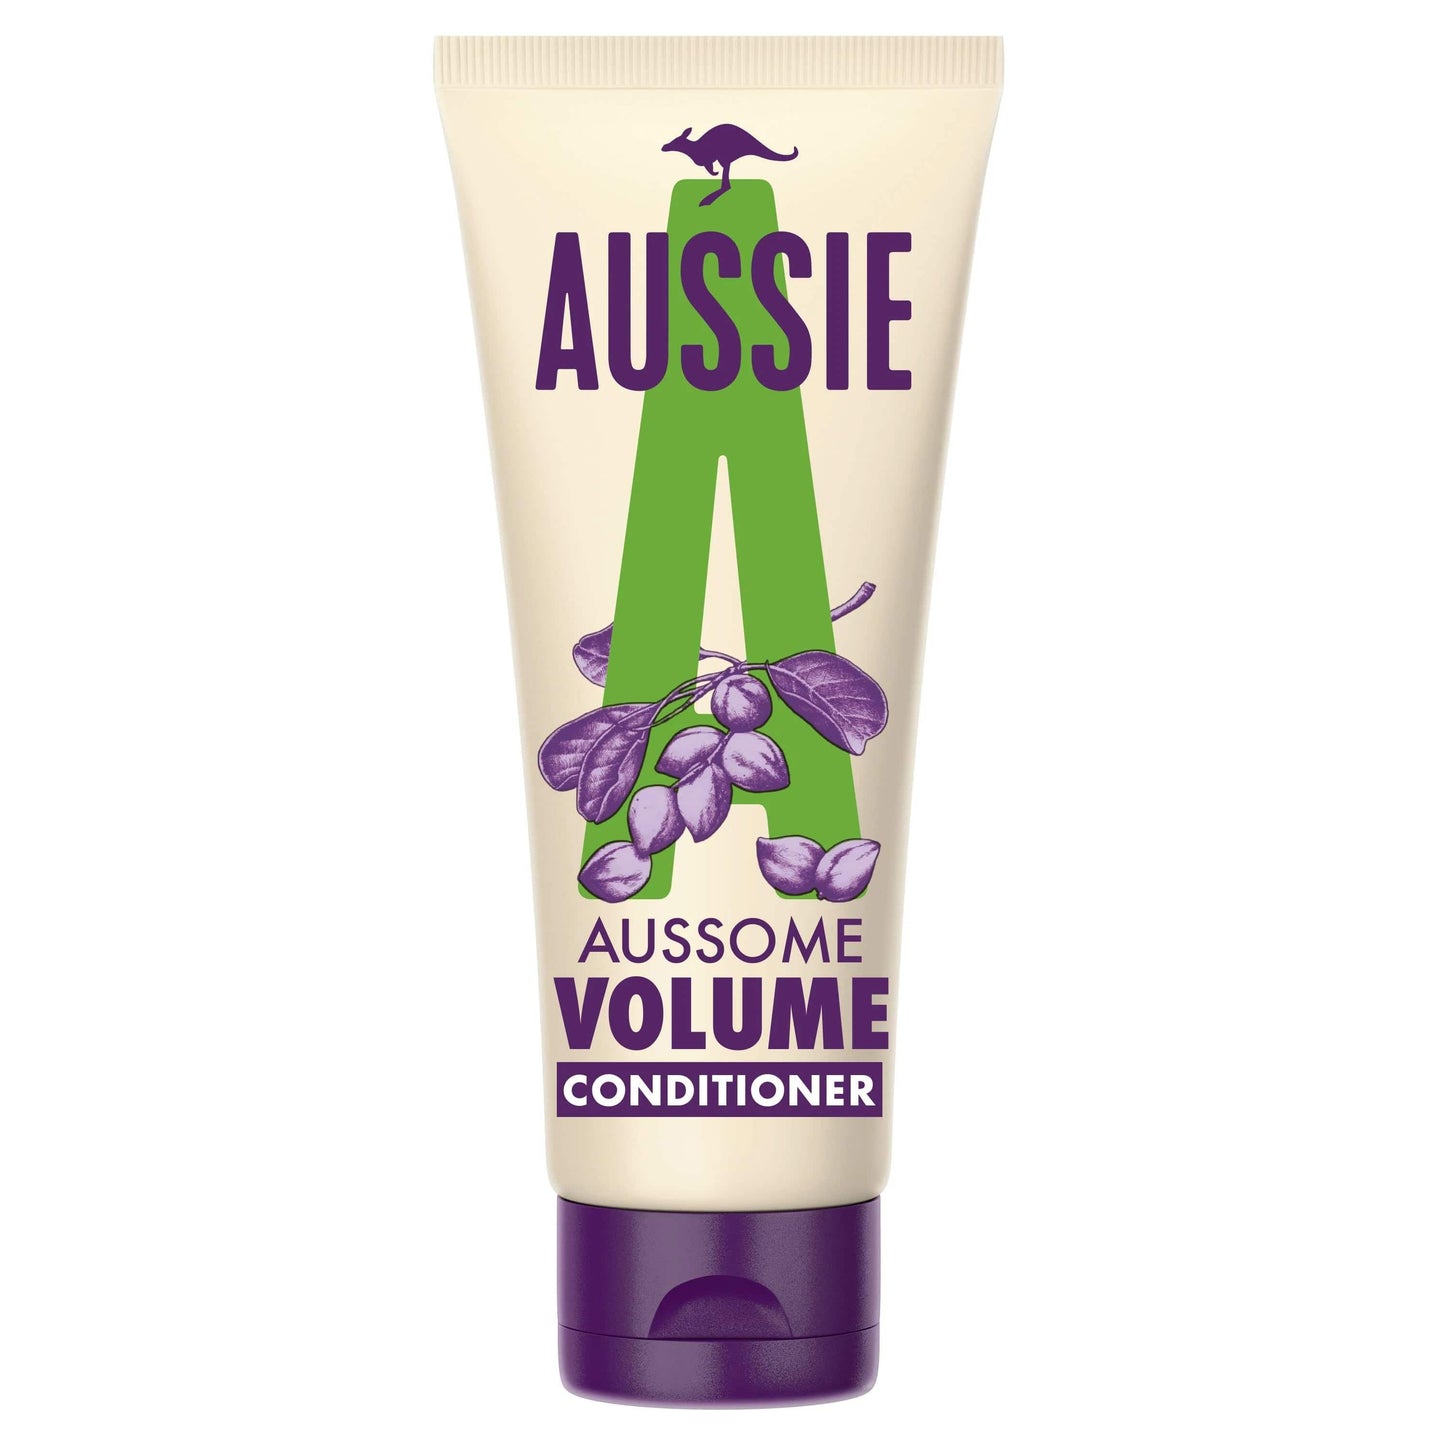 Aussie - Conditioner "Aussome Volume Conditioner" - 200ml - Aussie - Ethni Beauty Market